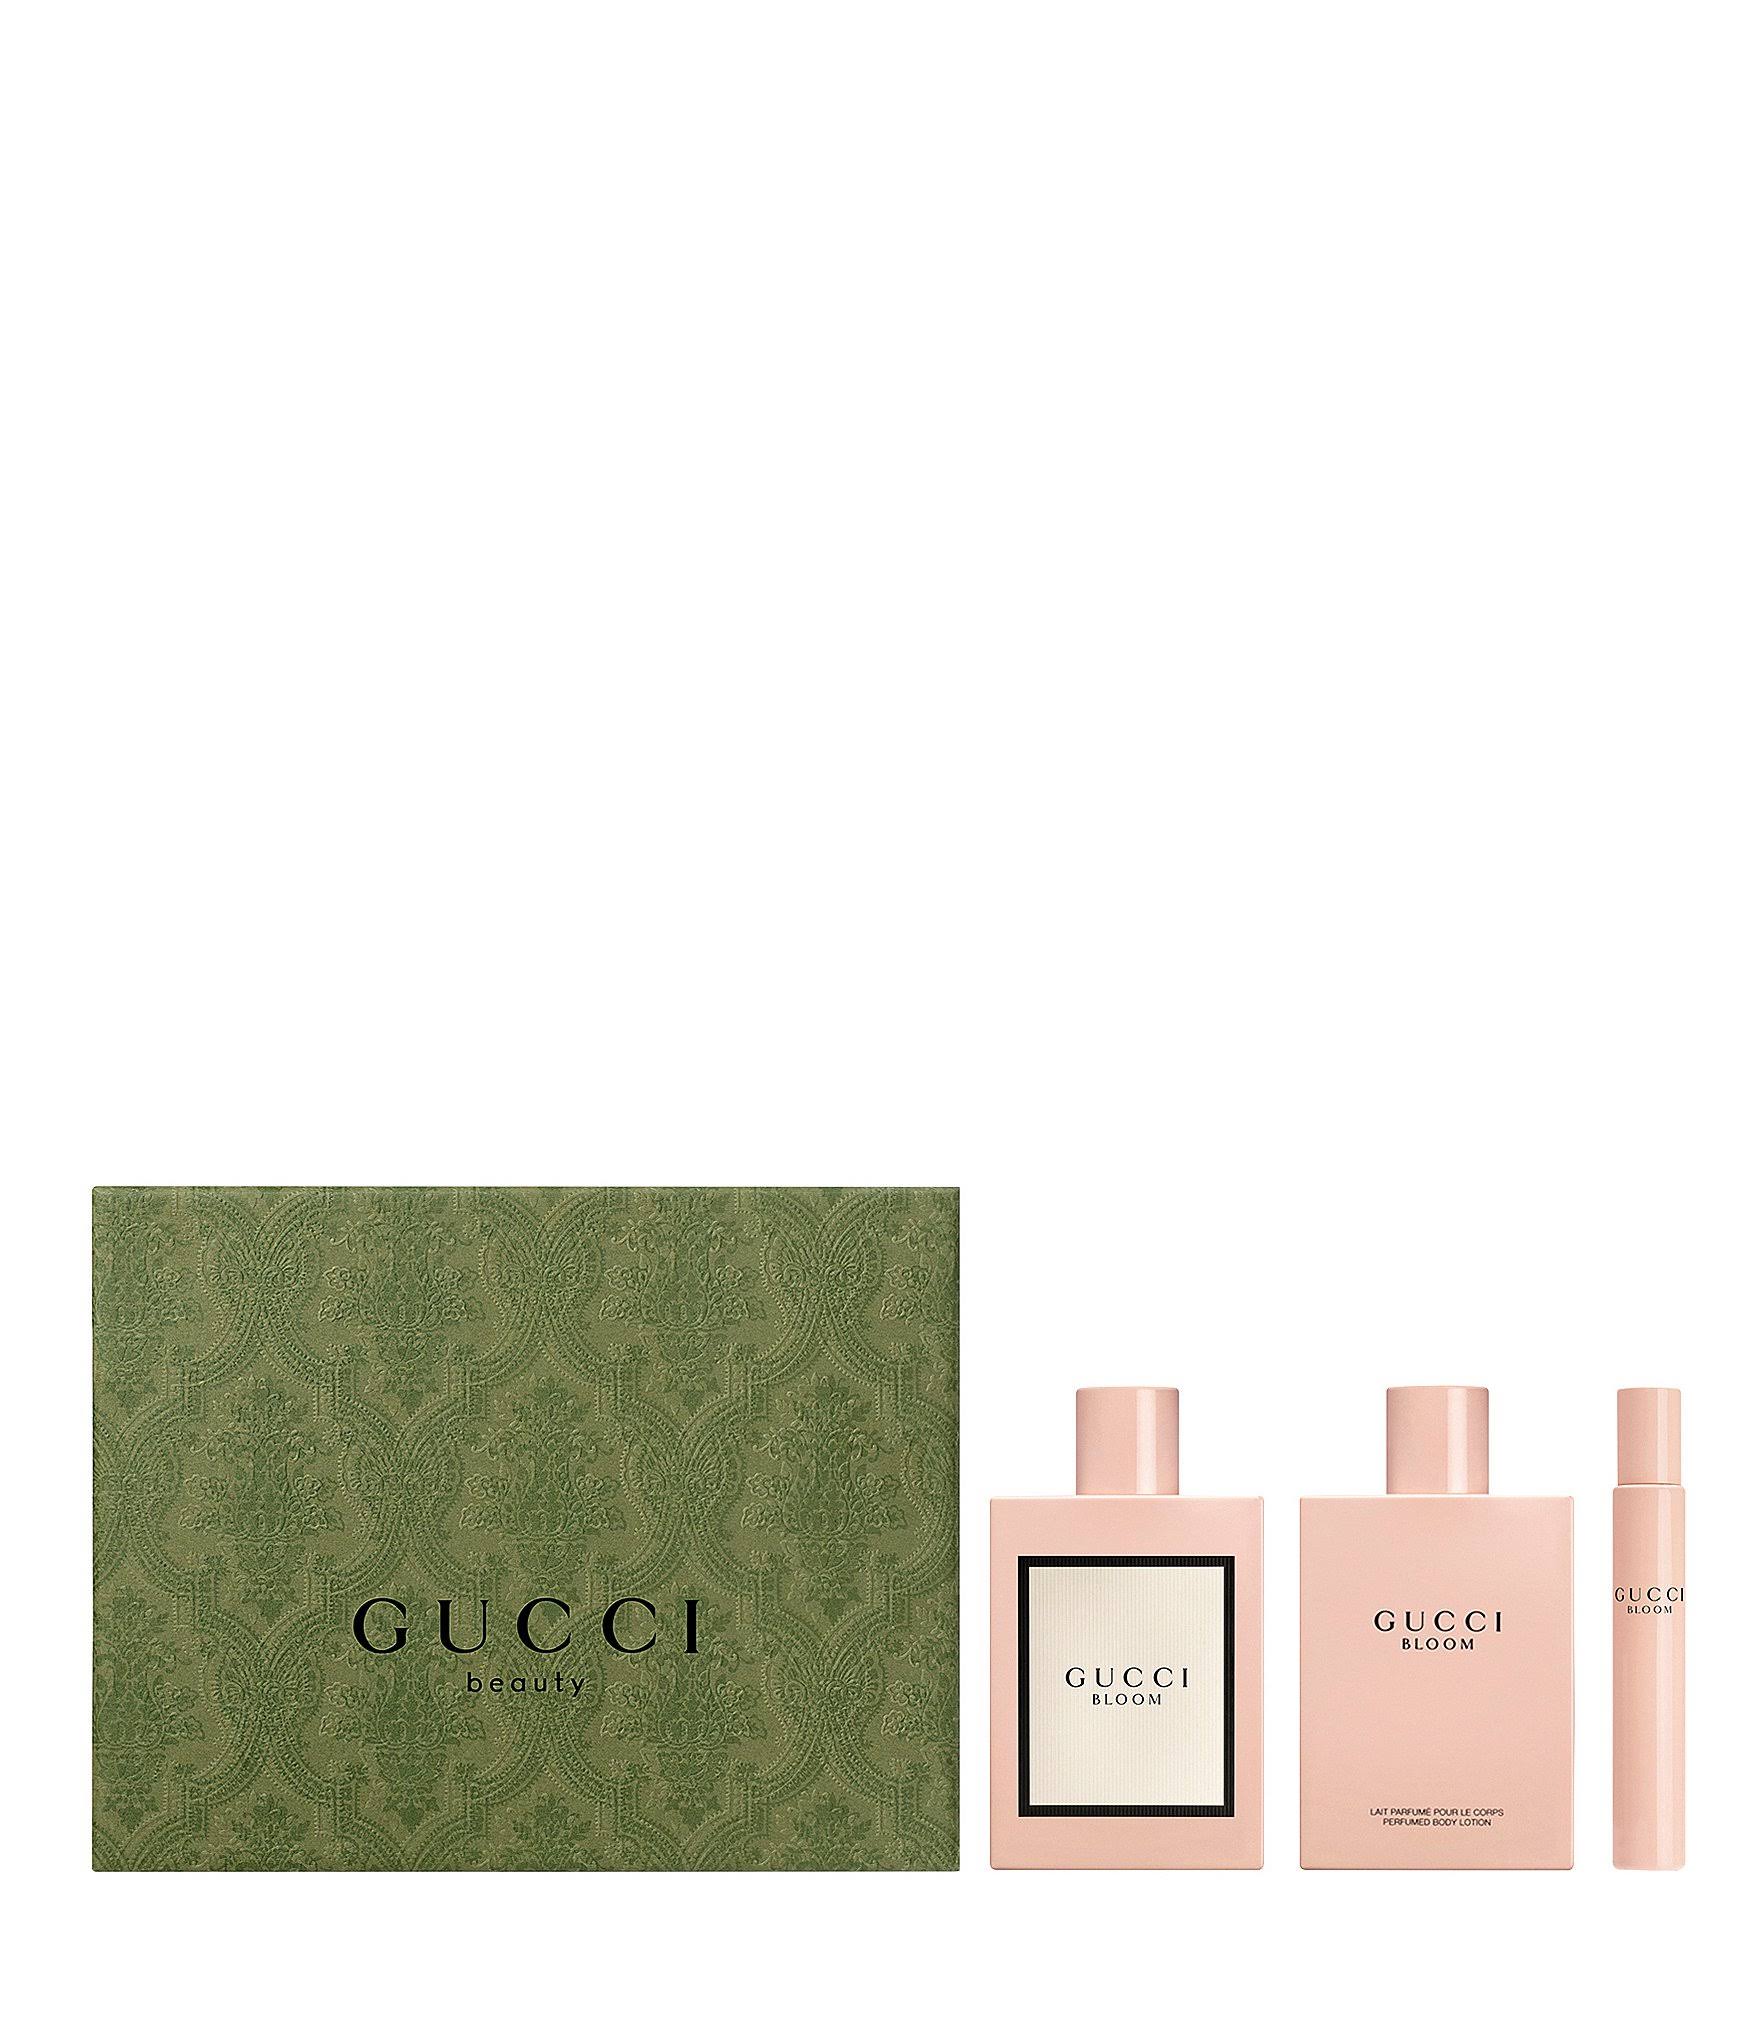 Gucci Bloom Eau De Parfum 3-Piece Set - Value Gift